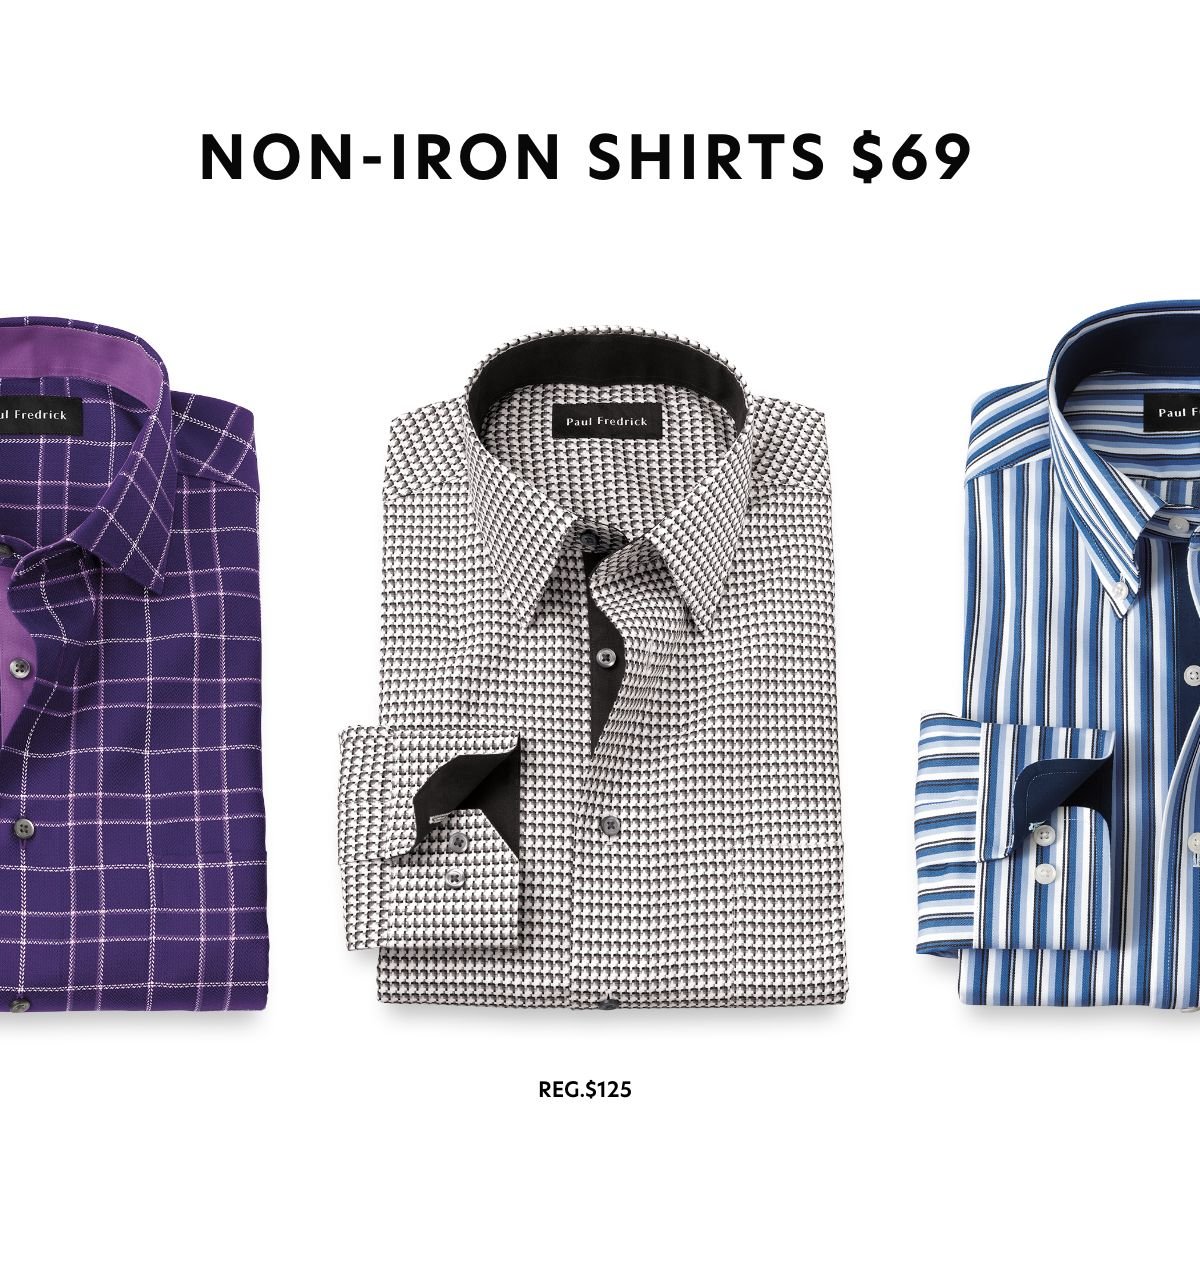 Non-Iron Shirts